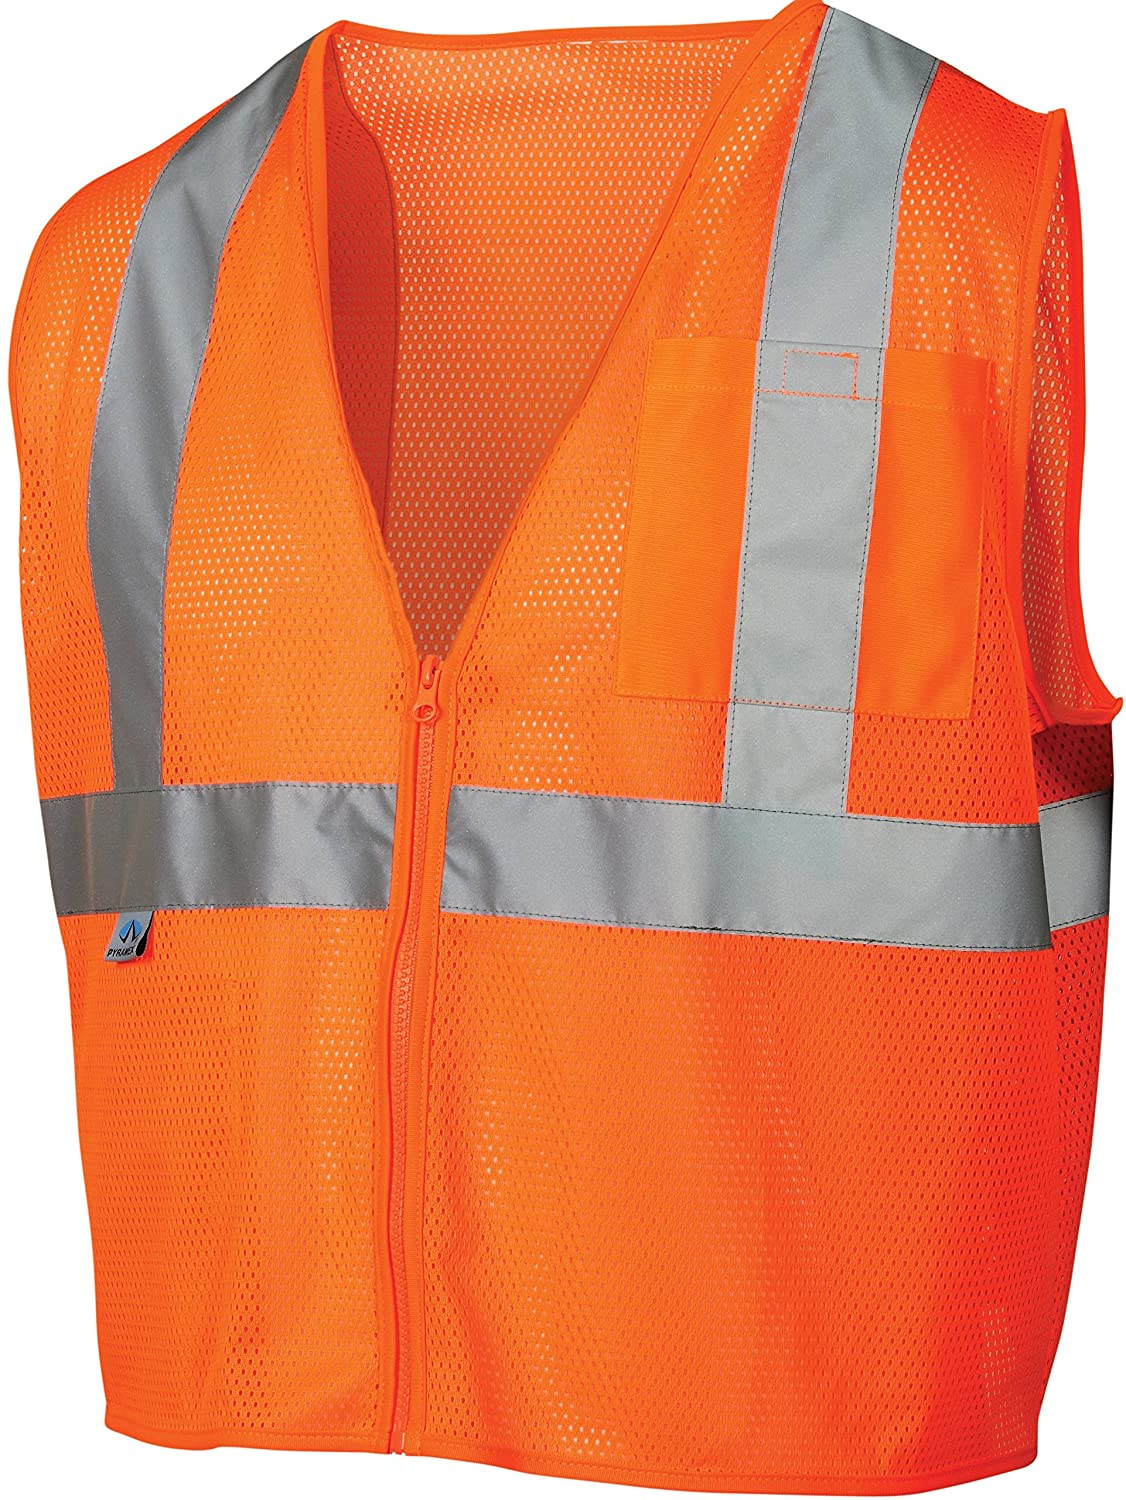 Hi-Vis Orange Safety Vest - XL